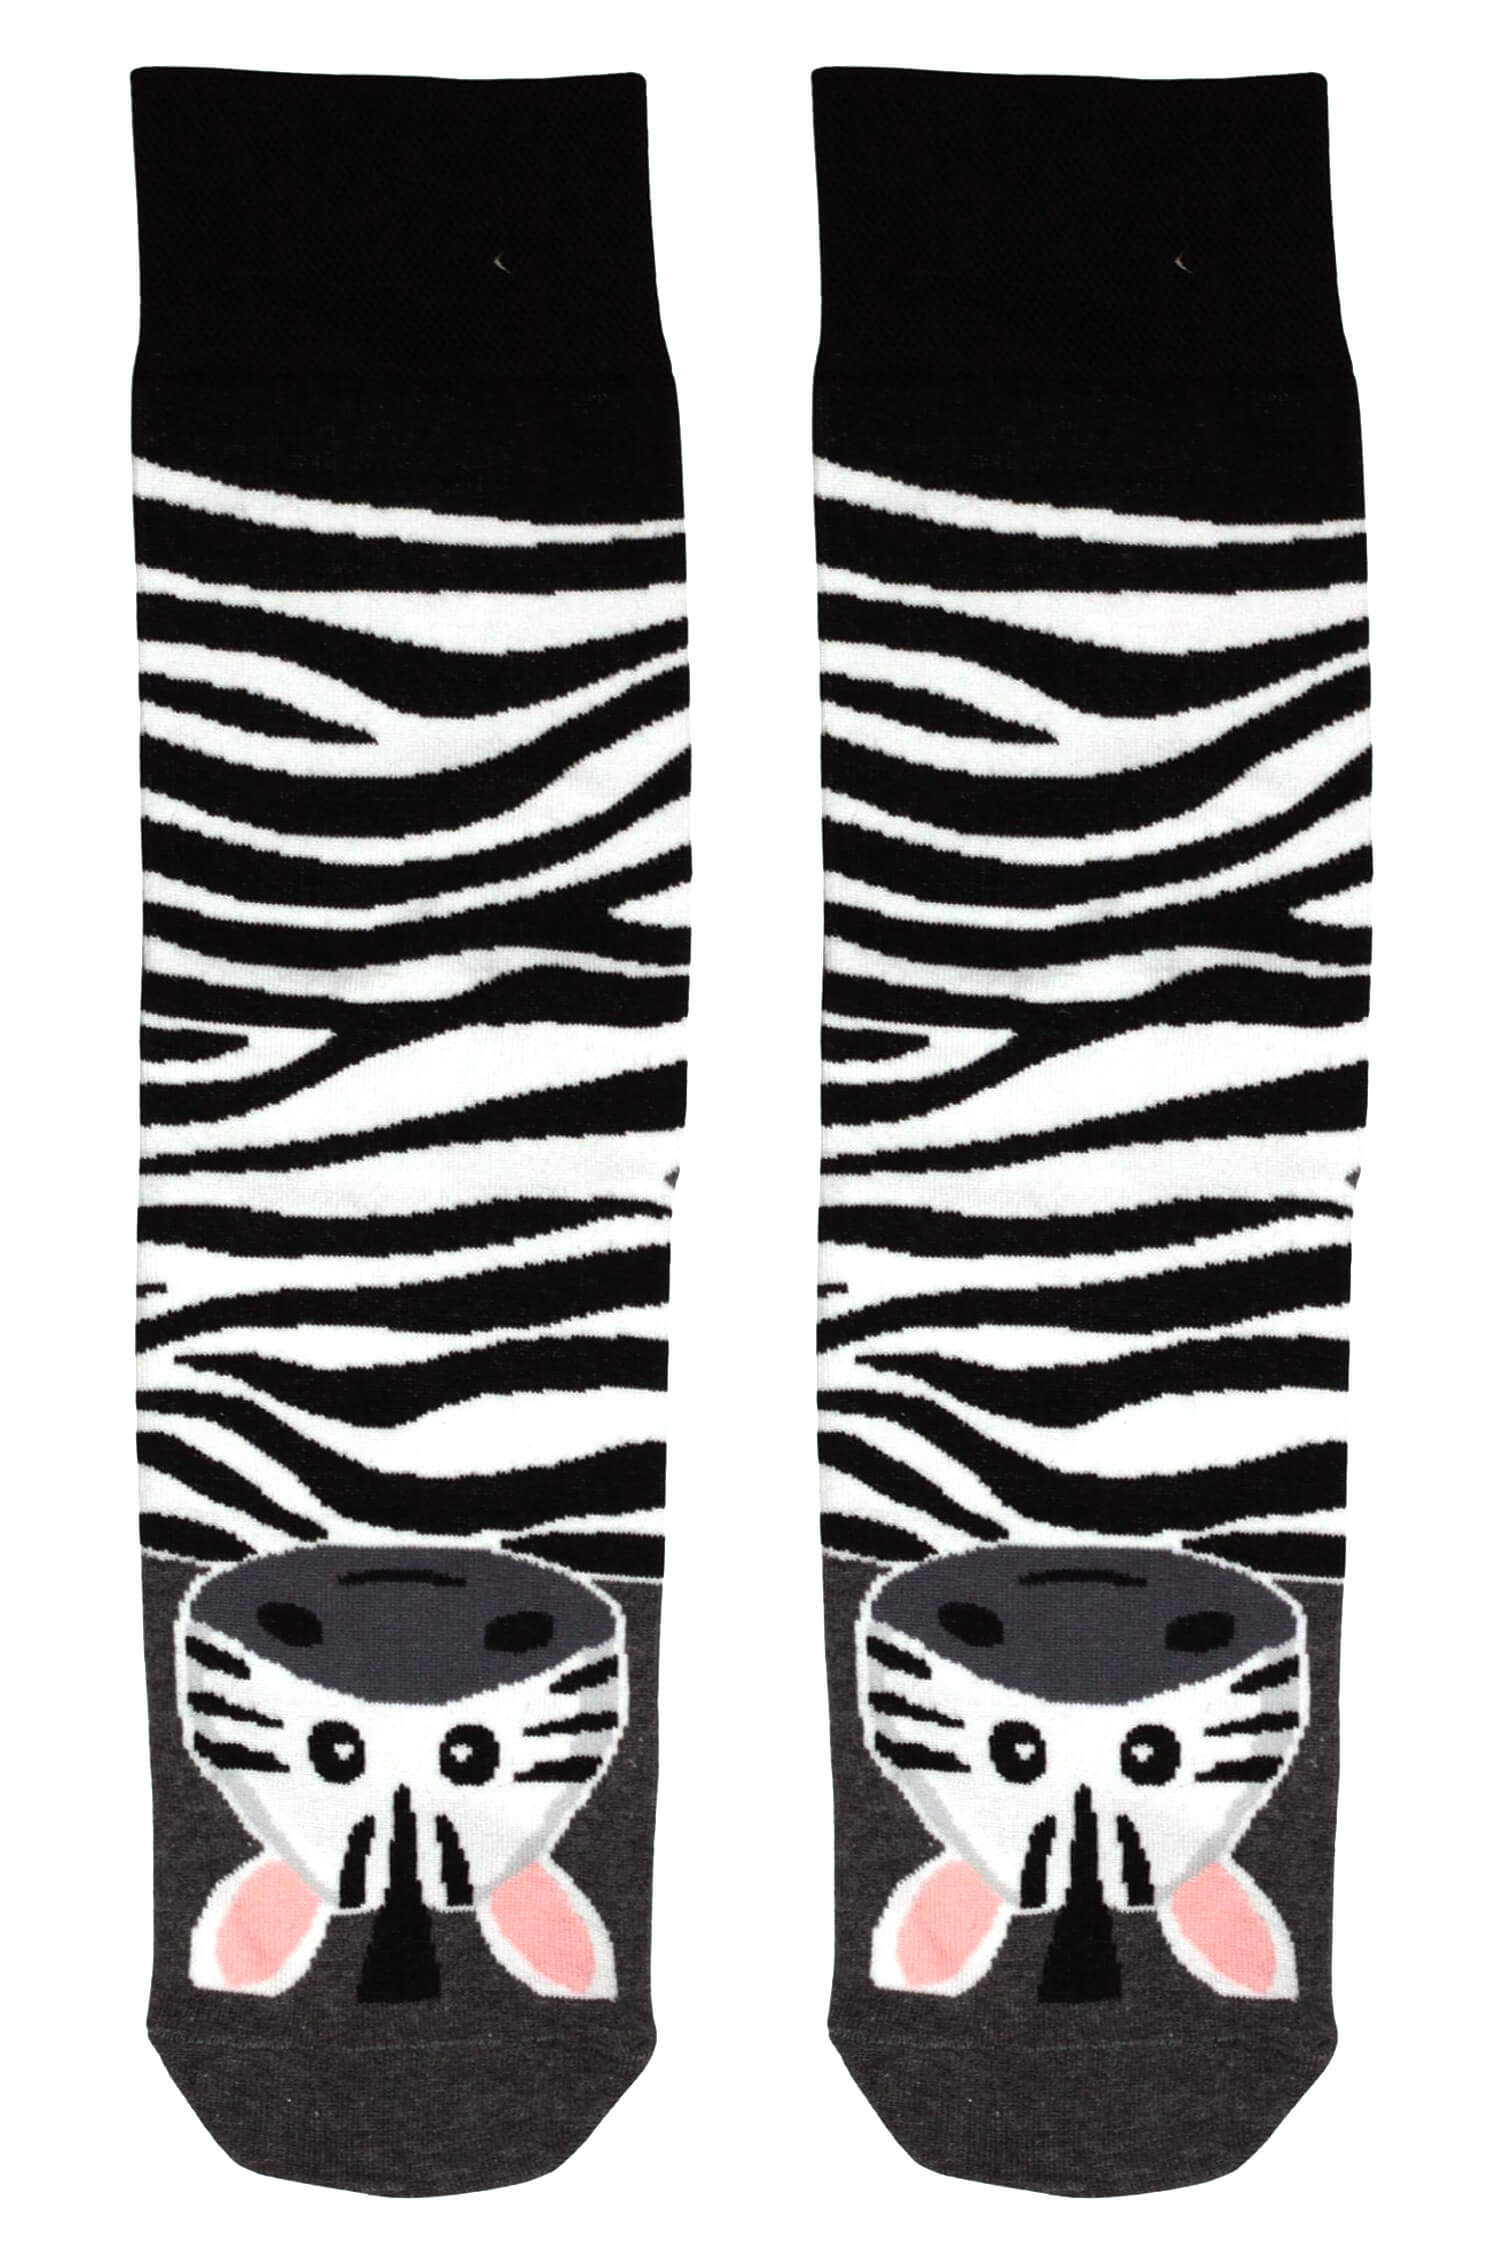 Veselé vysoké ponožky zebra 1979 41-43 šedá